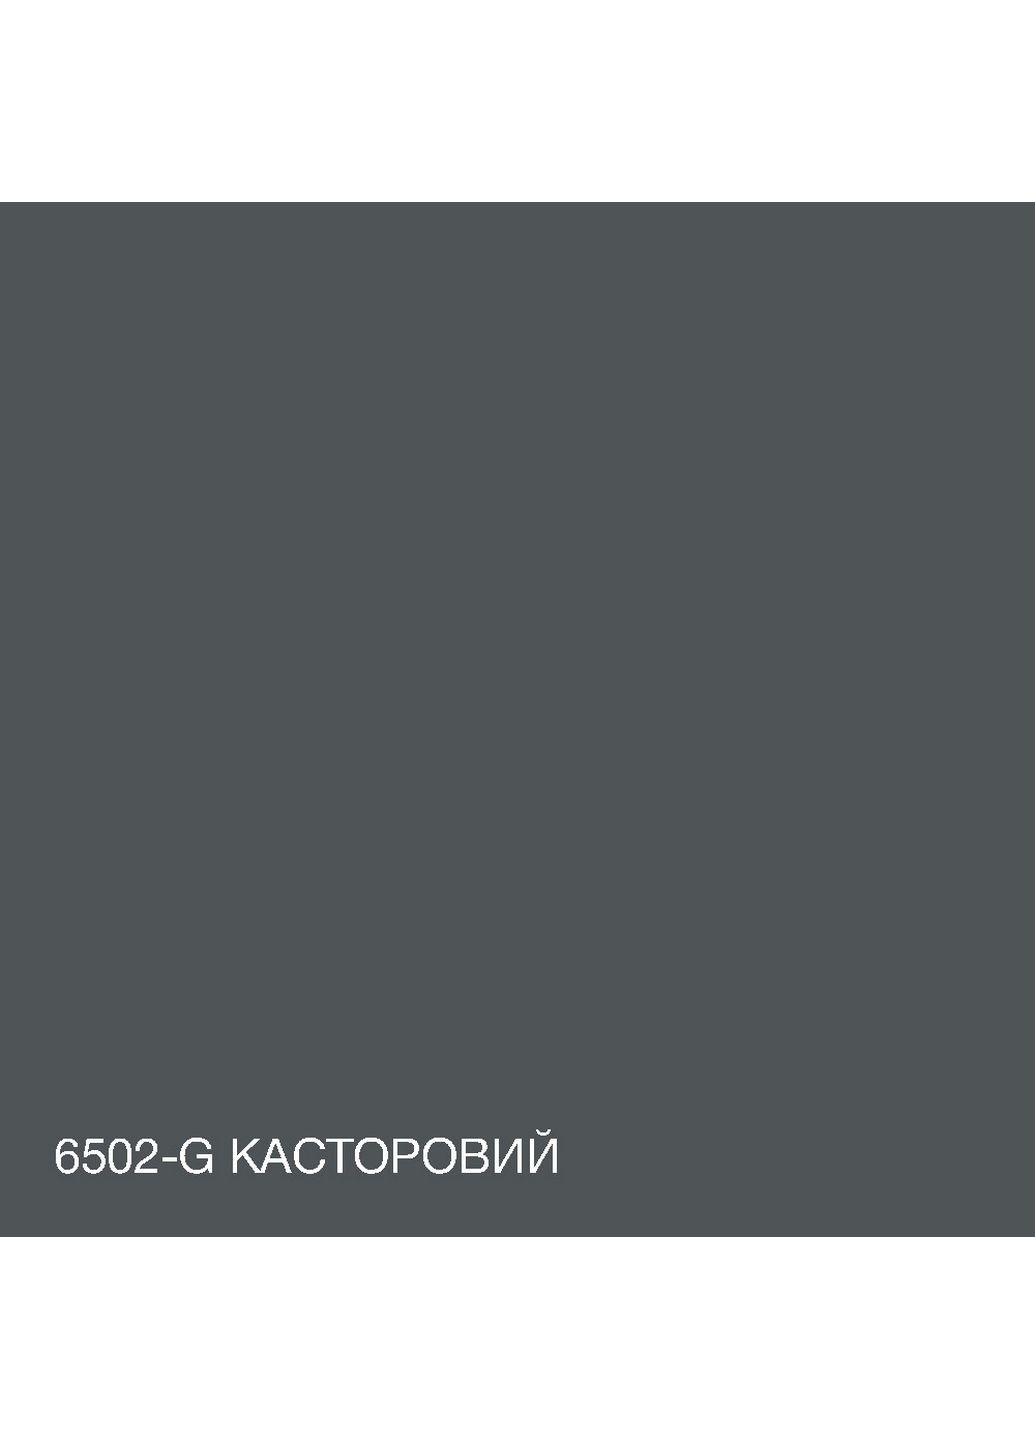 Інтер'єрна латексна фарба 6502-G 10 л SkyLine (289363747)